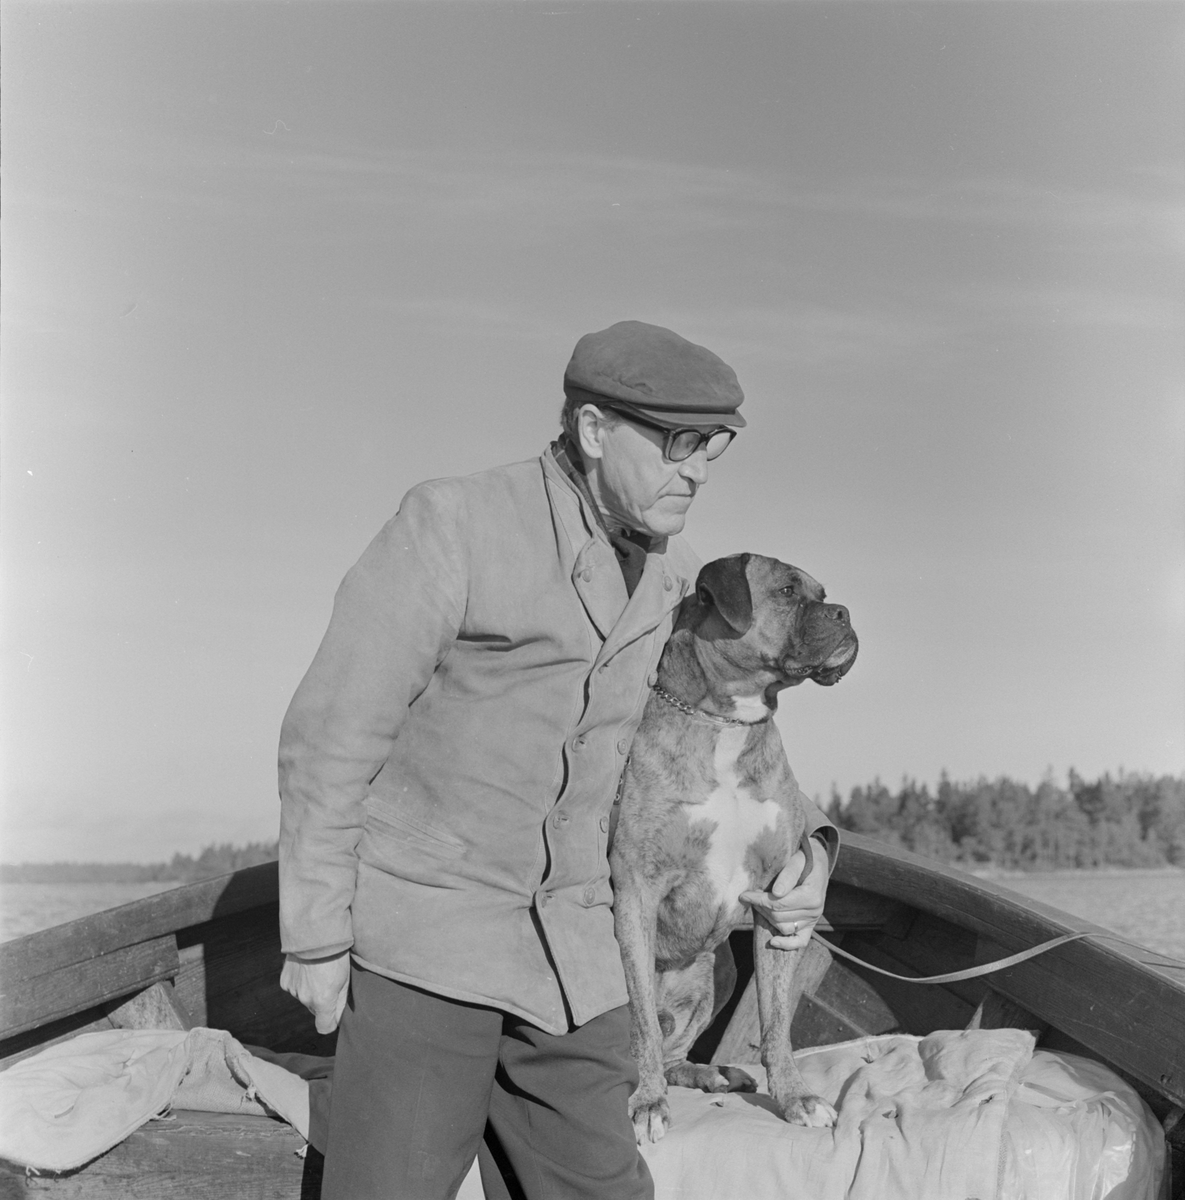 Fotograf Gunnar Sundgren med sin hund i båt, sannolikt Uppland